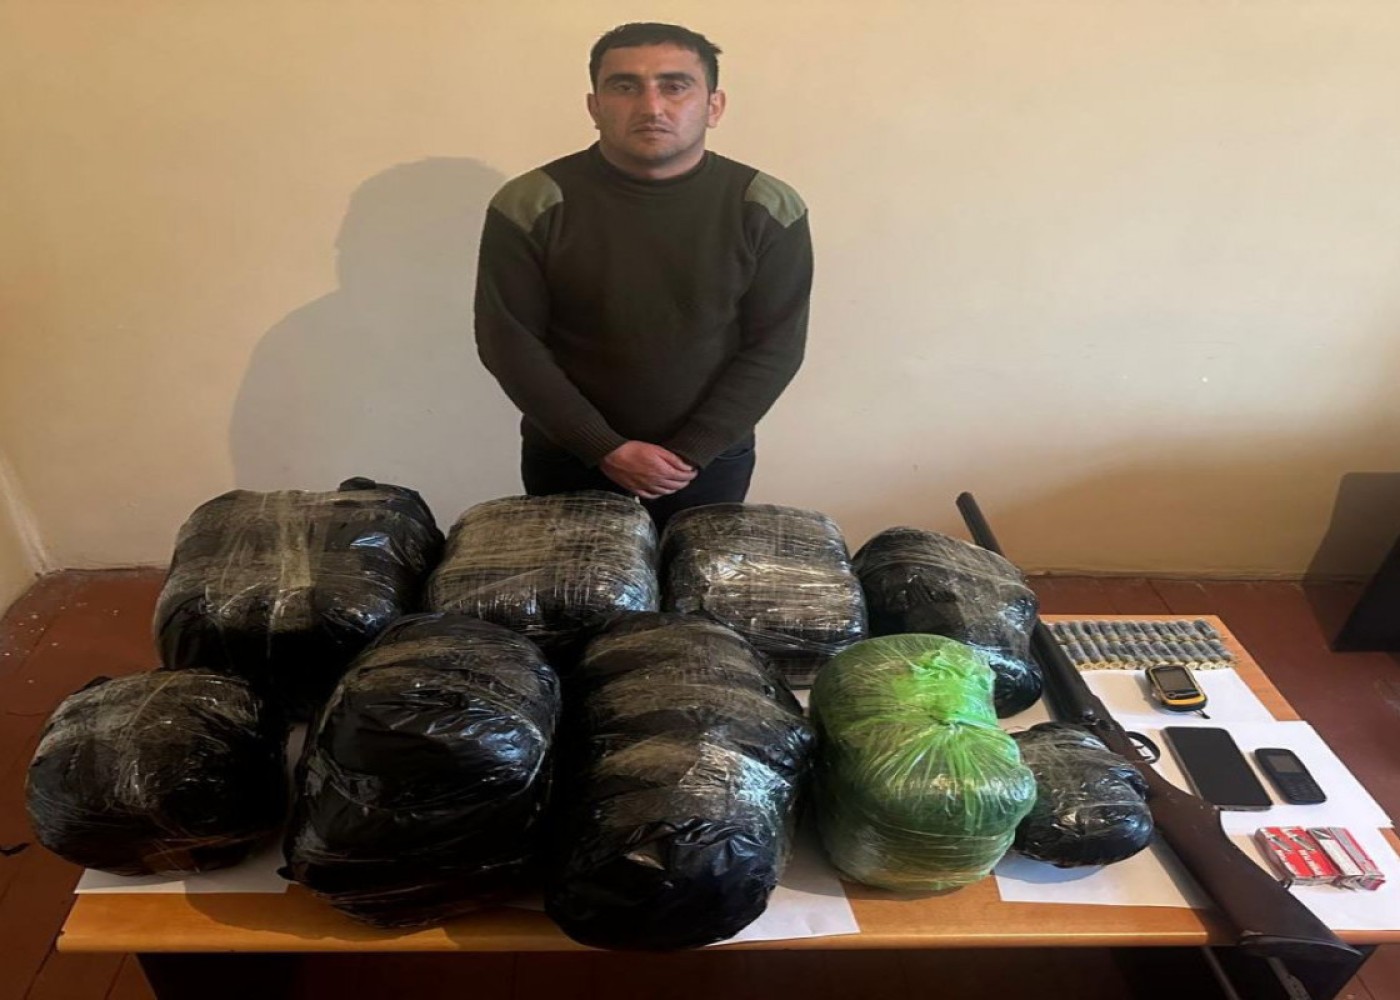 29,7 kq narkotikin Azərbaycana gətirilməsinin qarşısı alındı - FOTOLAR